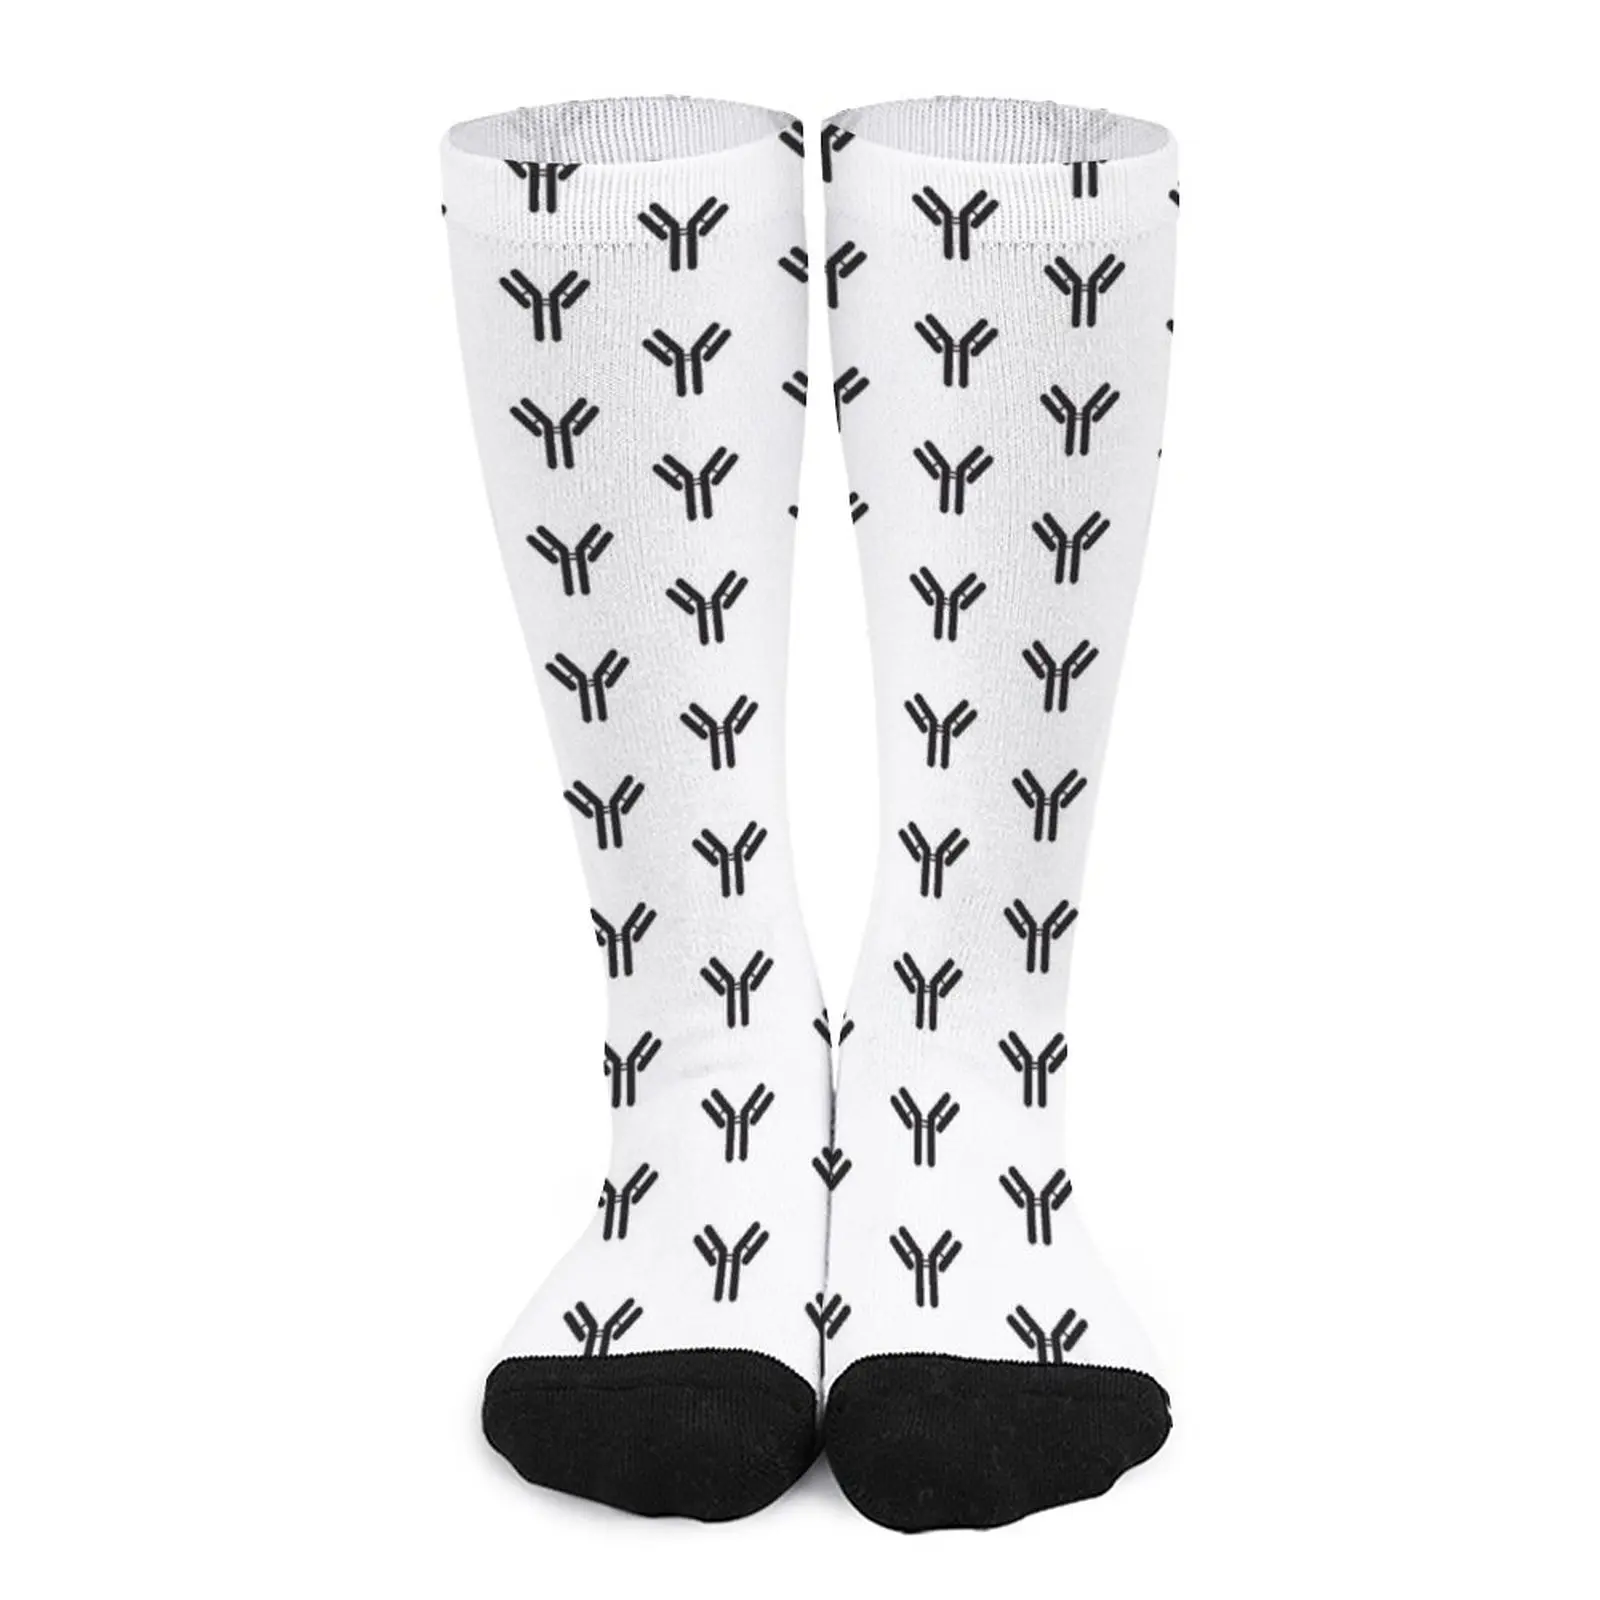 Antibody Socks valentines day gift for boyfriend non-slip soccer stockings пакет для ов gift 11 5 х 12 х 8 см